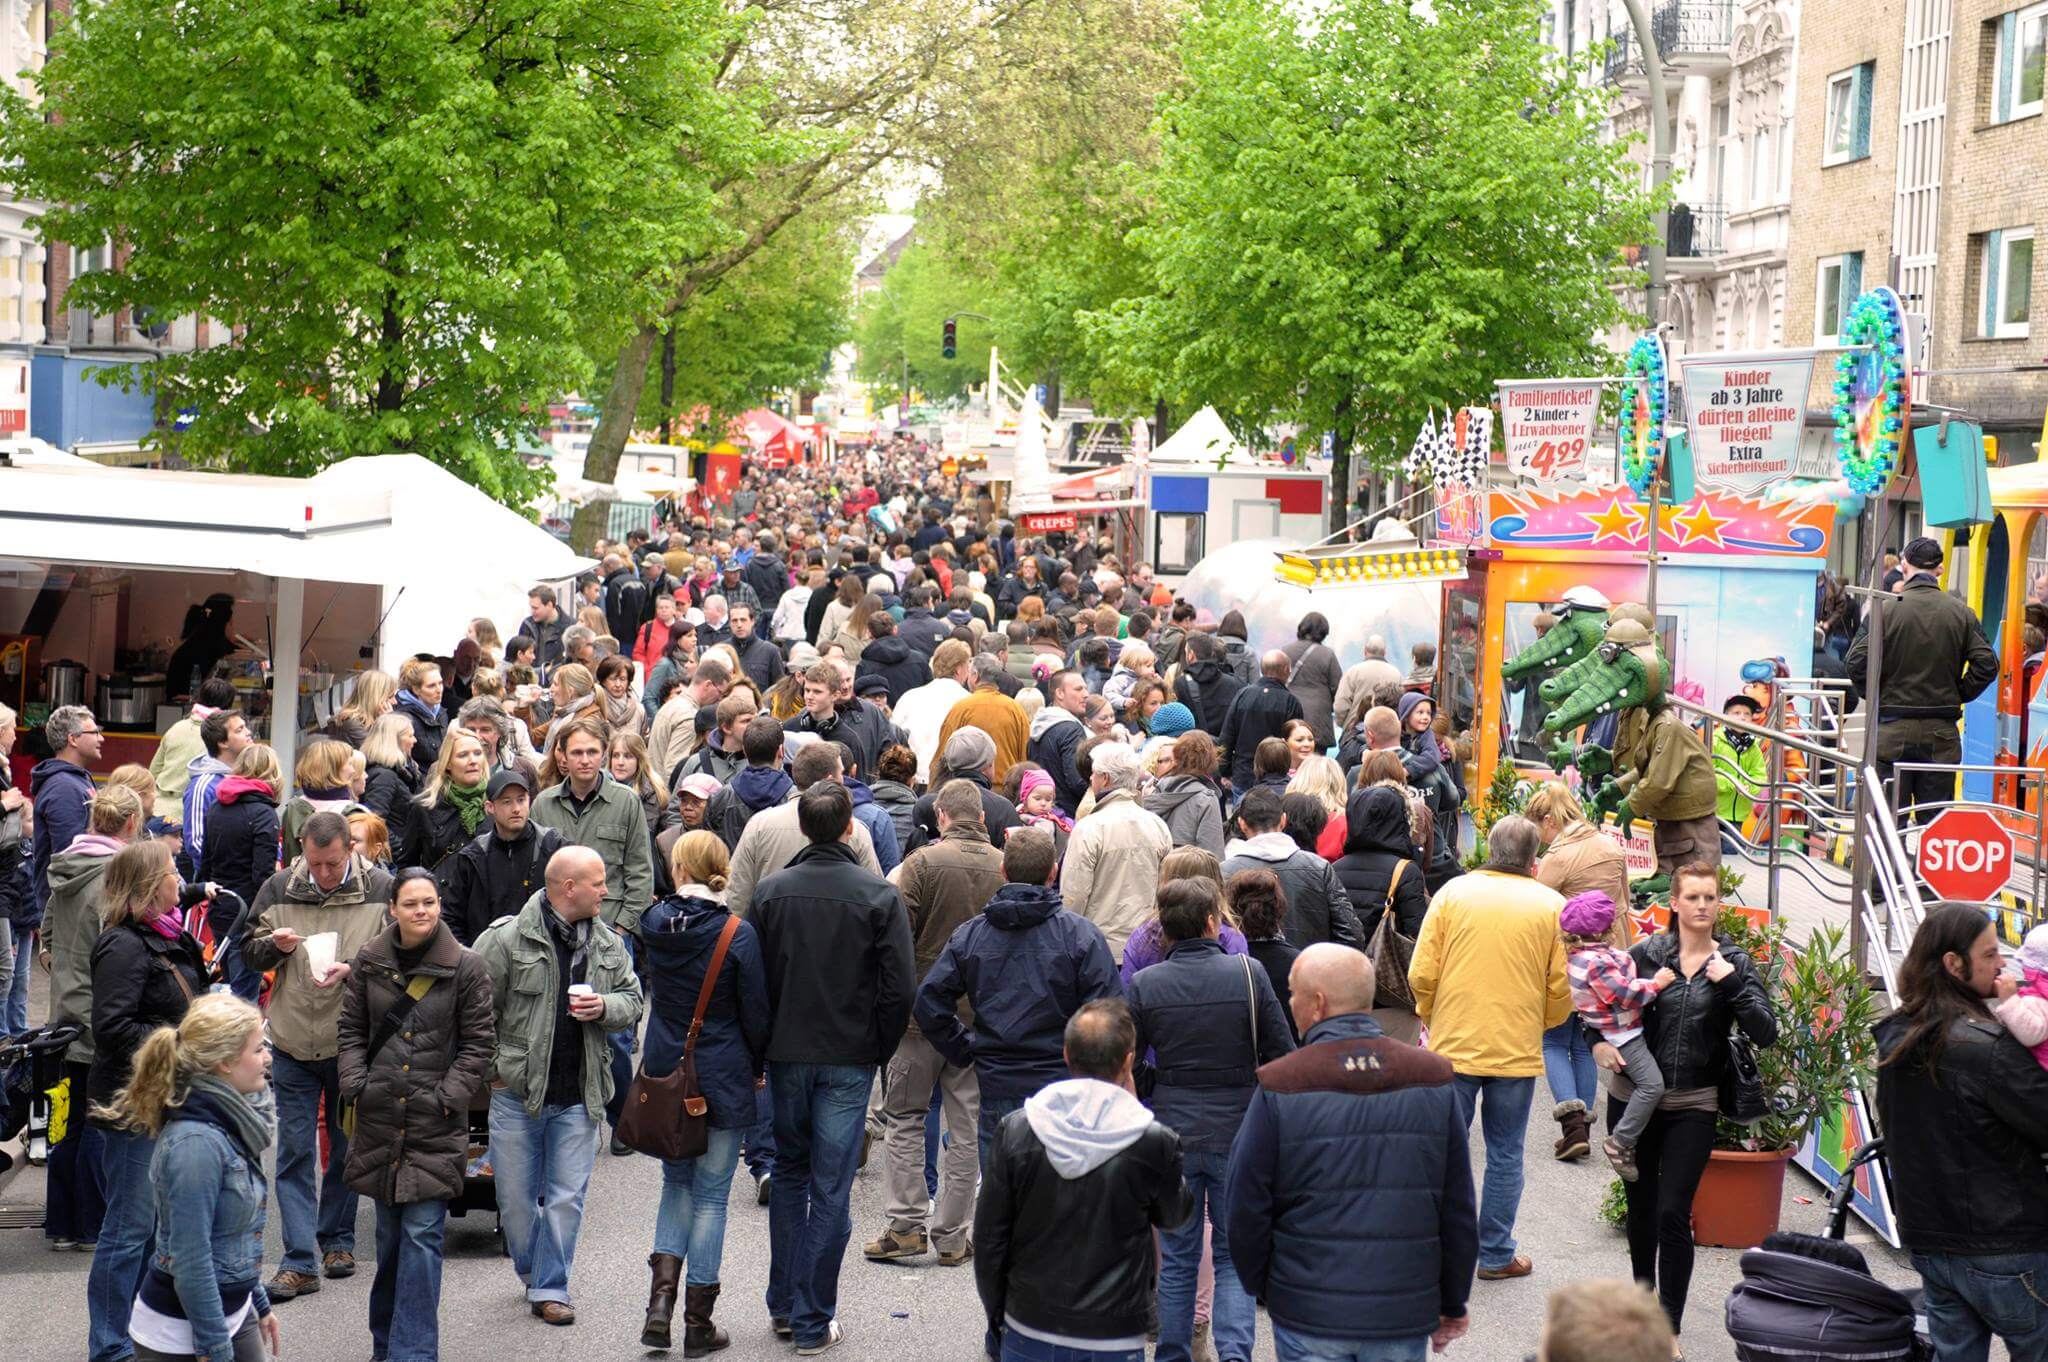 Es ist Osterstraßenfest! Freu dich auf eine bunte Meile mit toller Musik, vielen Leckereien & einem Flohmarkt!